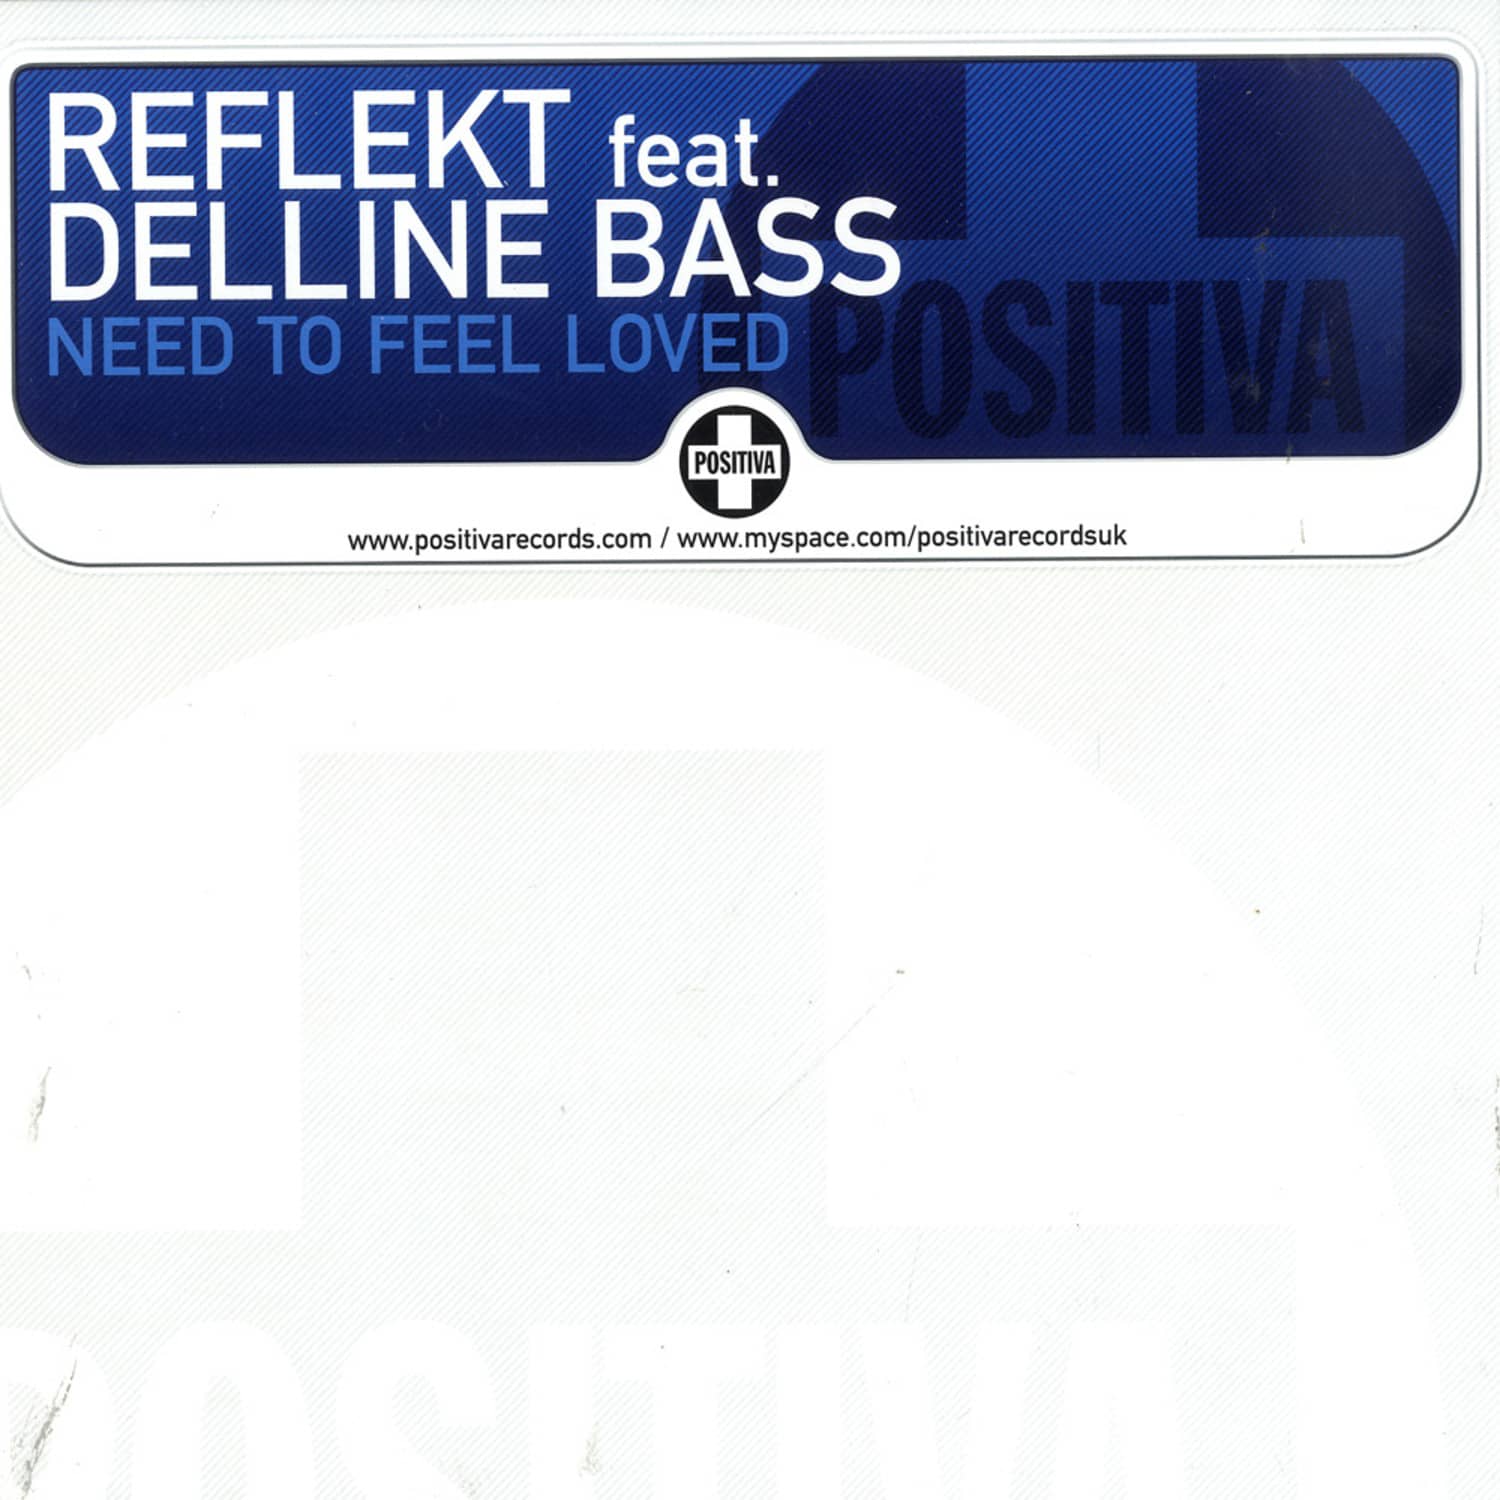 Reflekt feat. Delline Bass - NEED TO FEEL LOVED